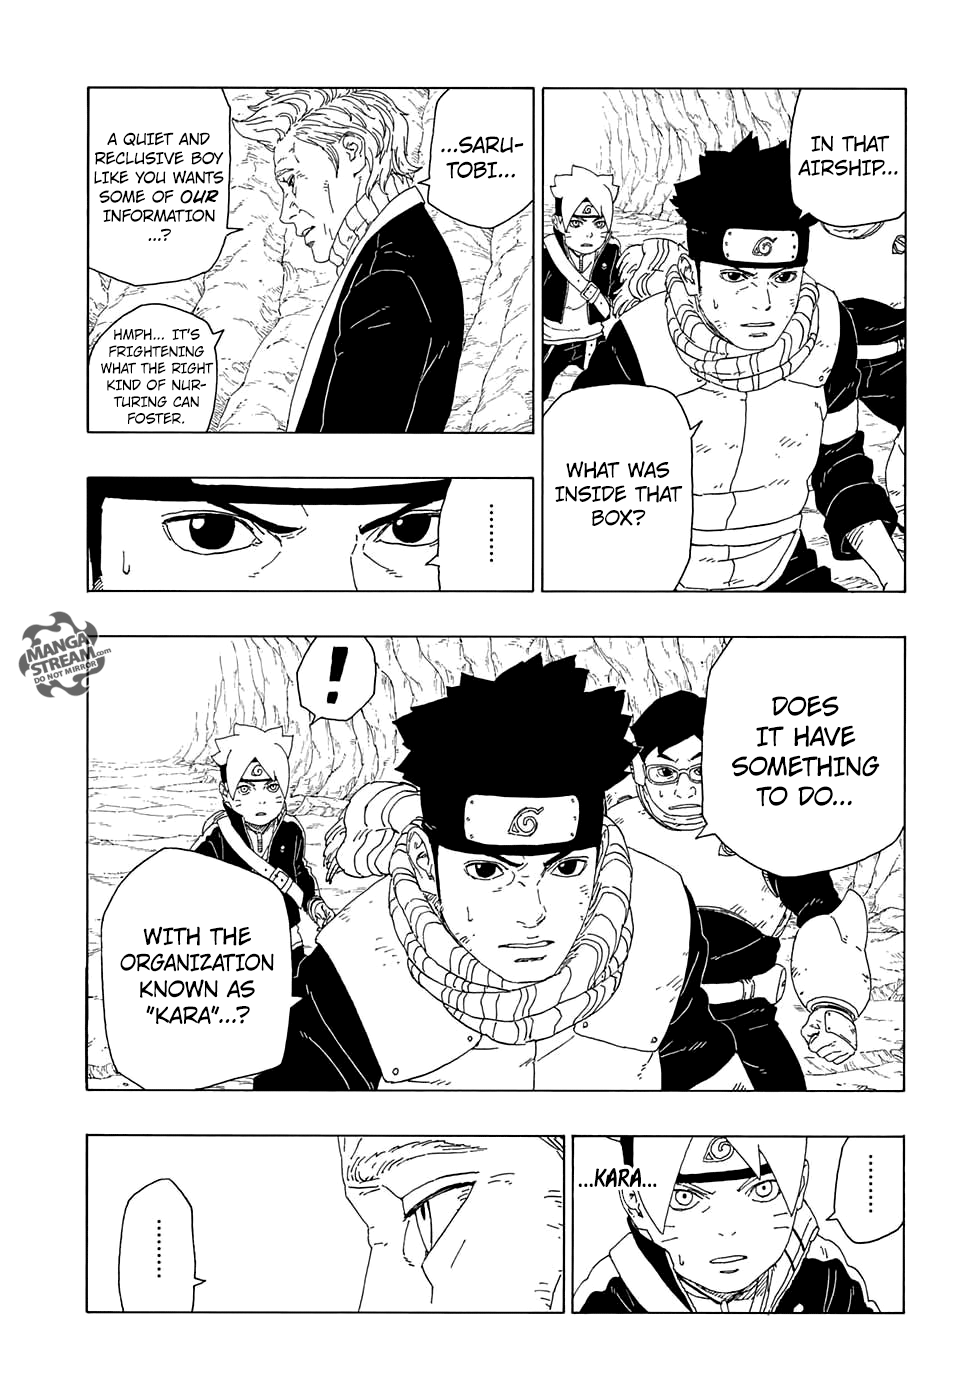 Boruto: Naruto Next Generations Chapter 20 : Ninja Technology | Page 9